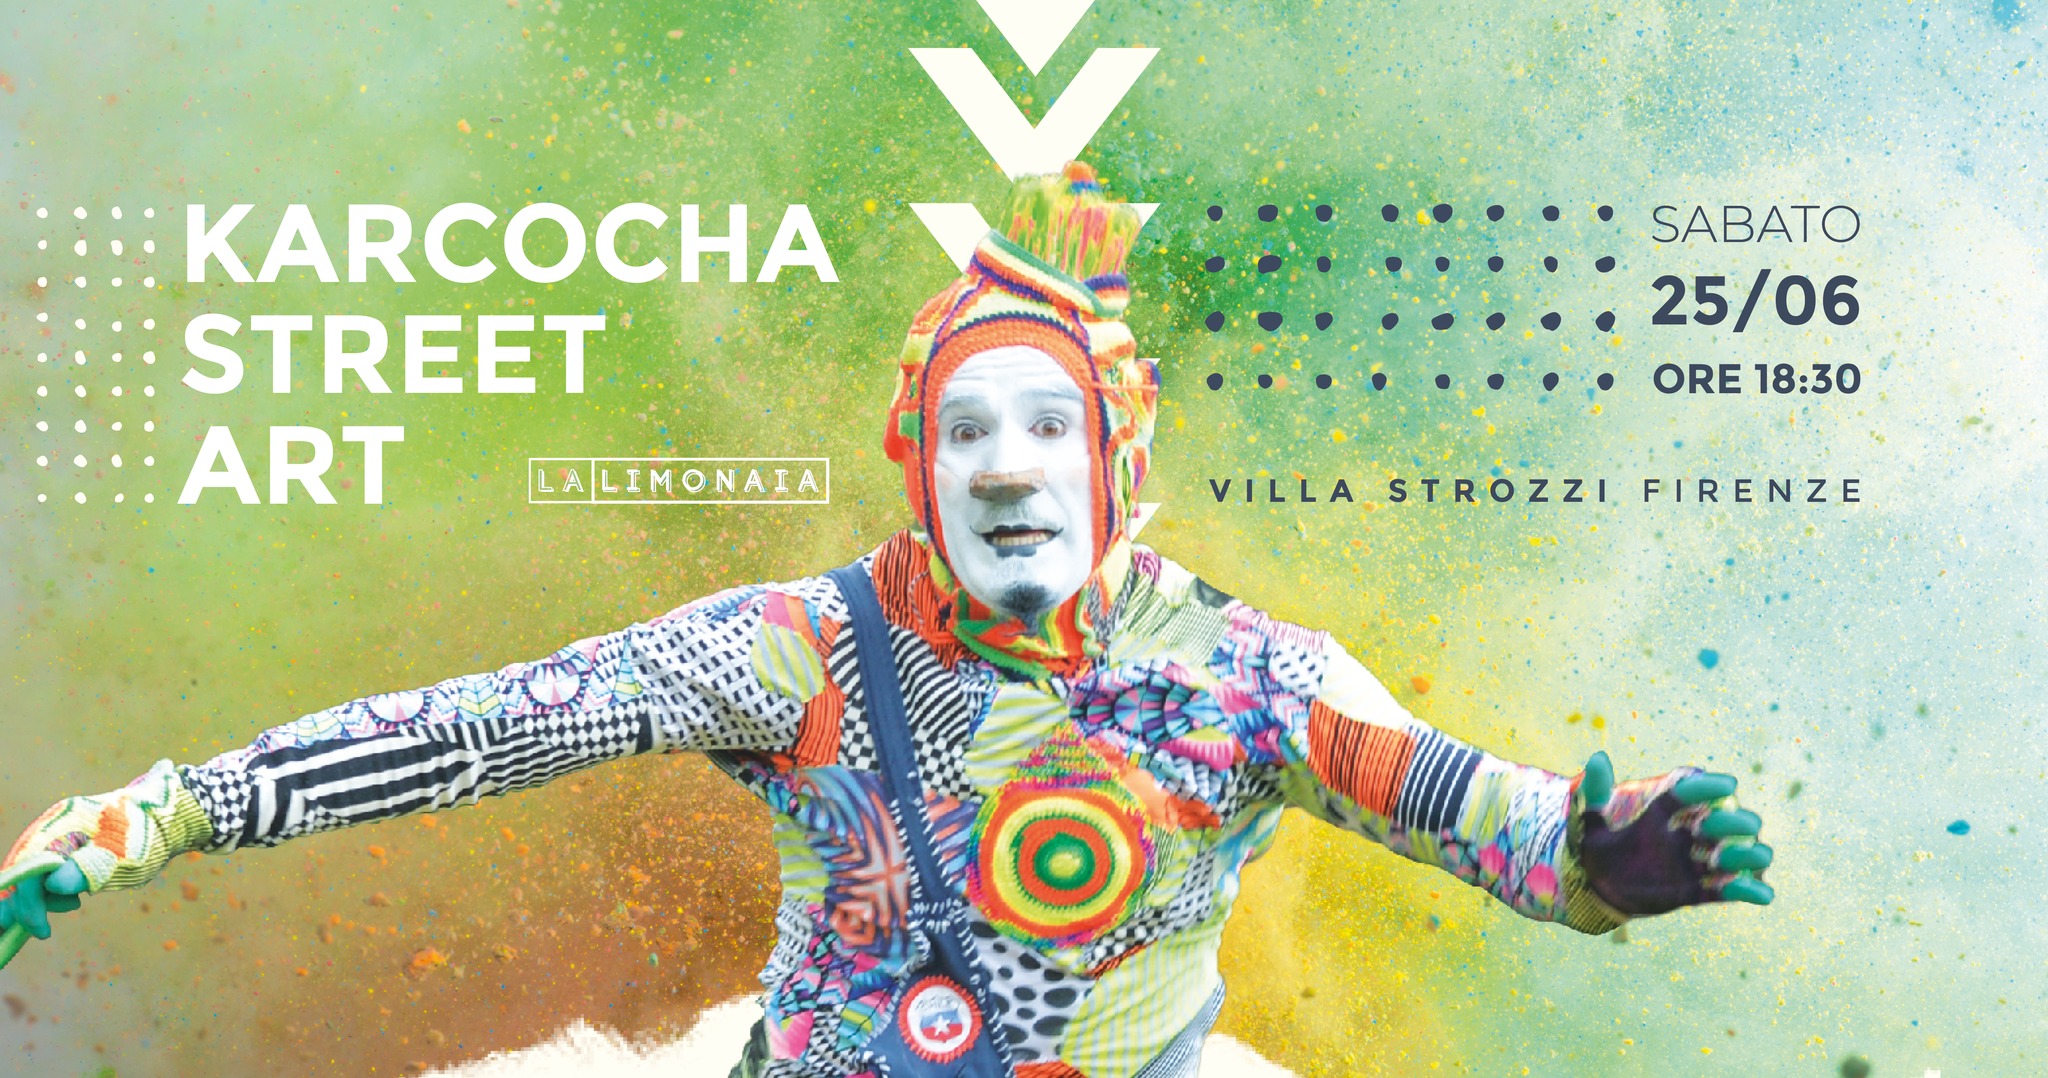 L’“Arlecchino moderno” Karcocha, uno degli street artist più quotati al mondo, sarà alla Limonaia di Villa Strozzi sabato 25 giugno alle 18.30. Ingresso gratuito